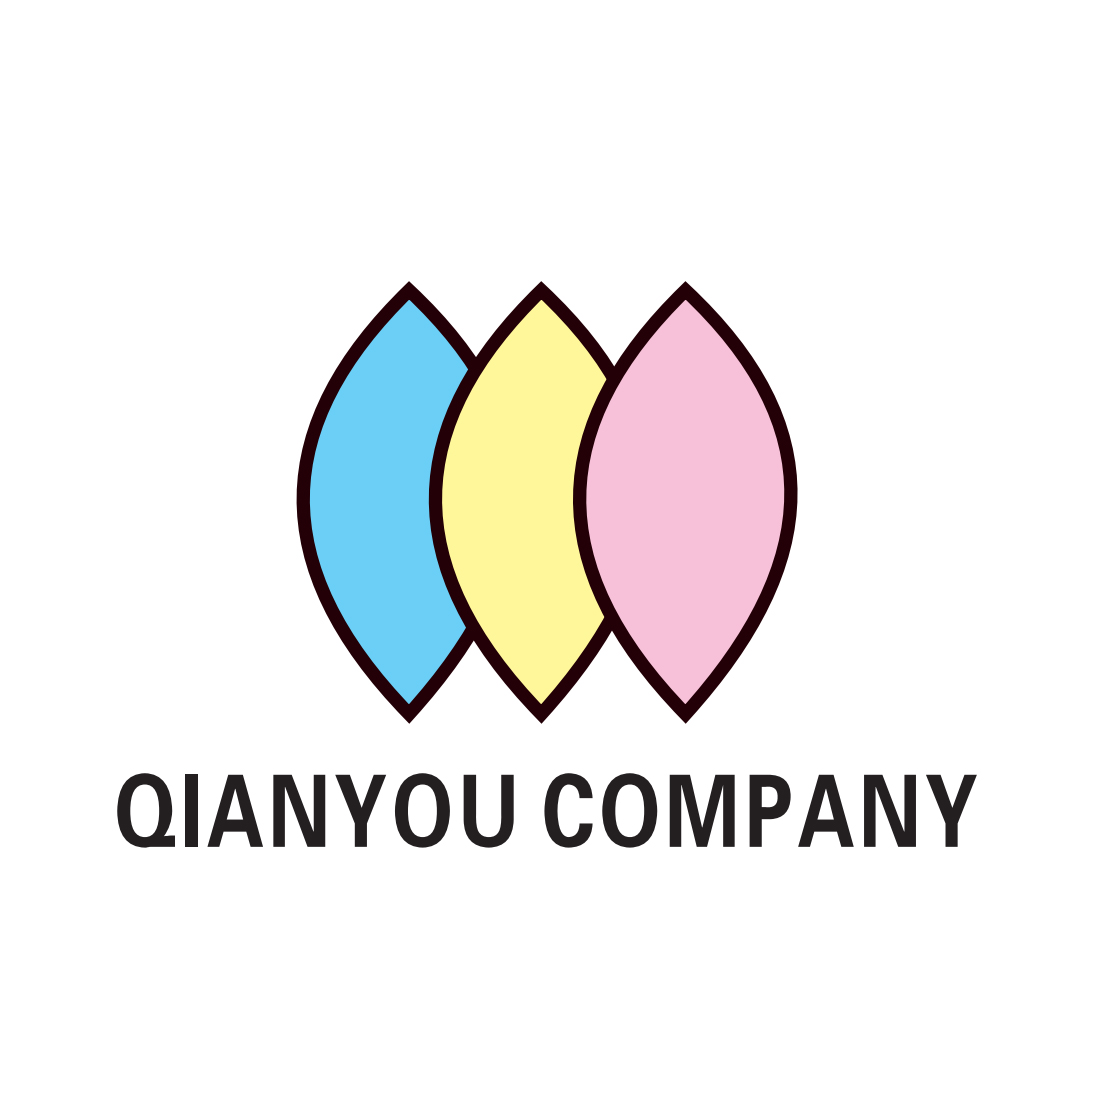 Guangzhou qianyou commodity co ltd